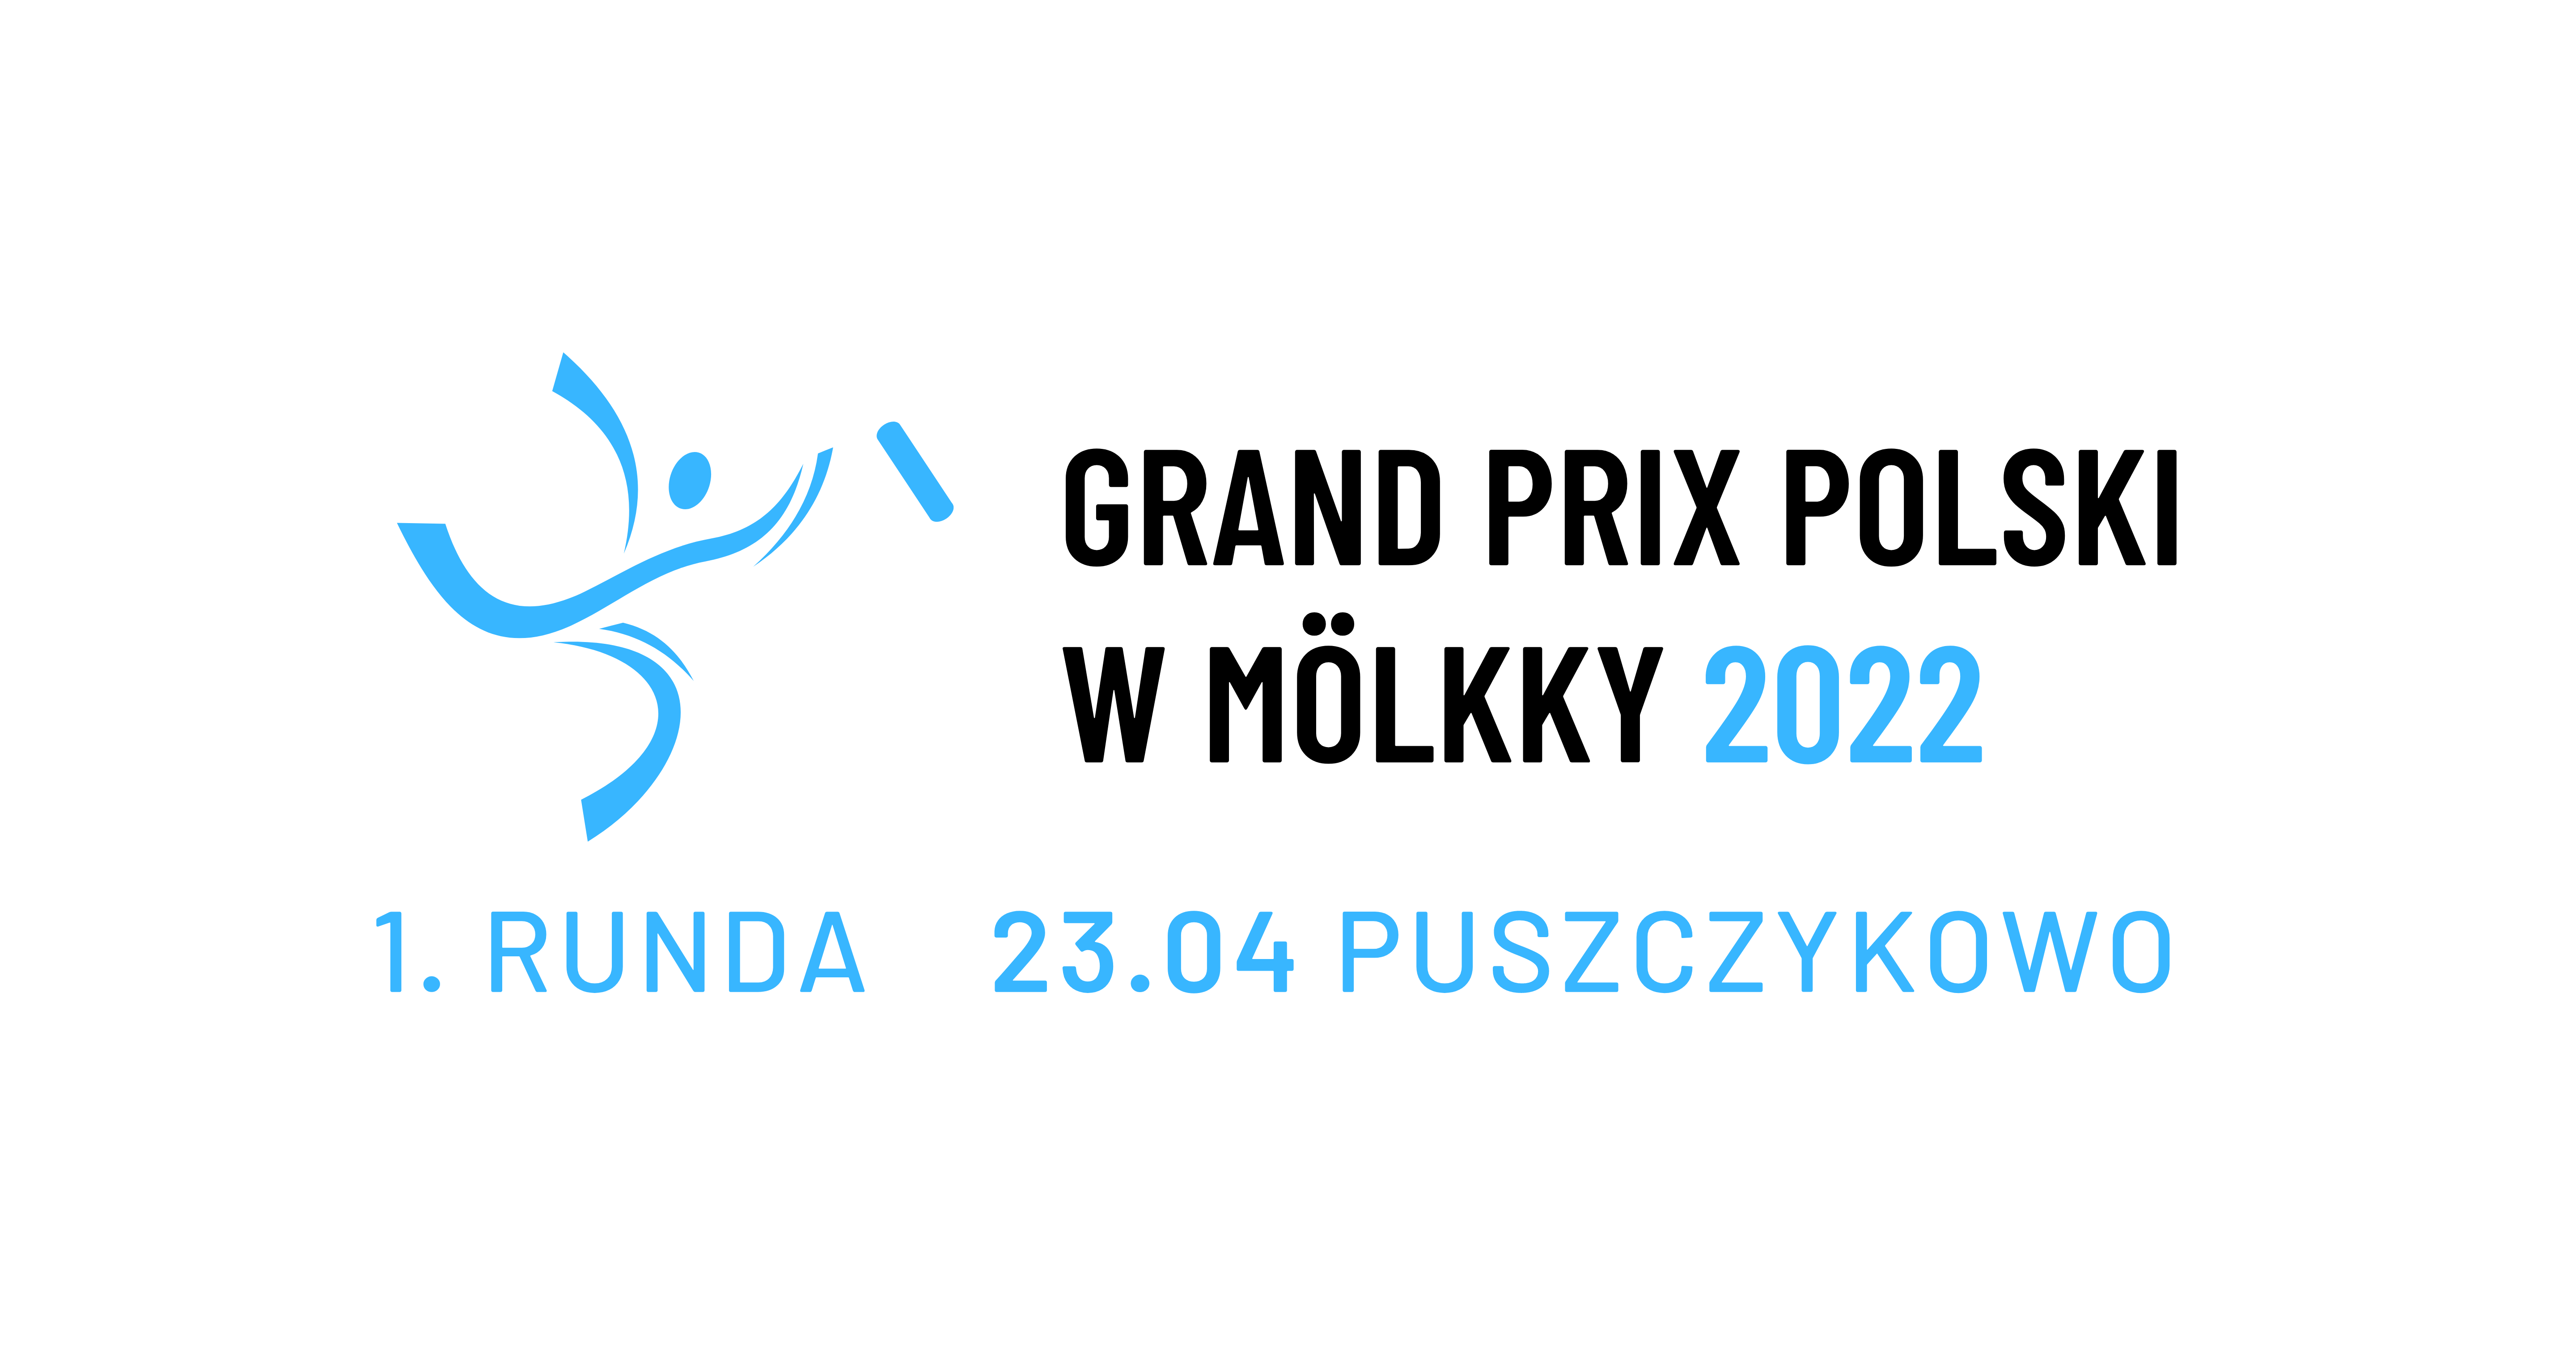 Grand Prix of Poland - event 1/6